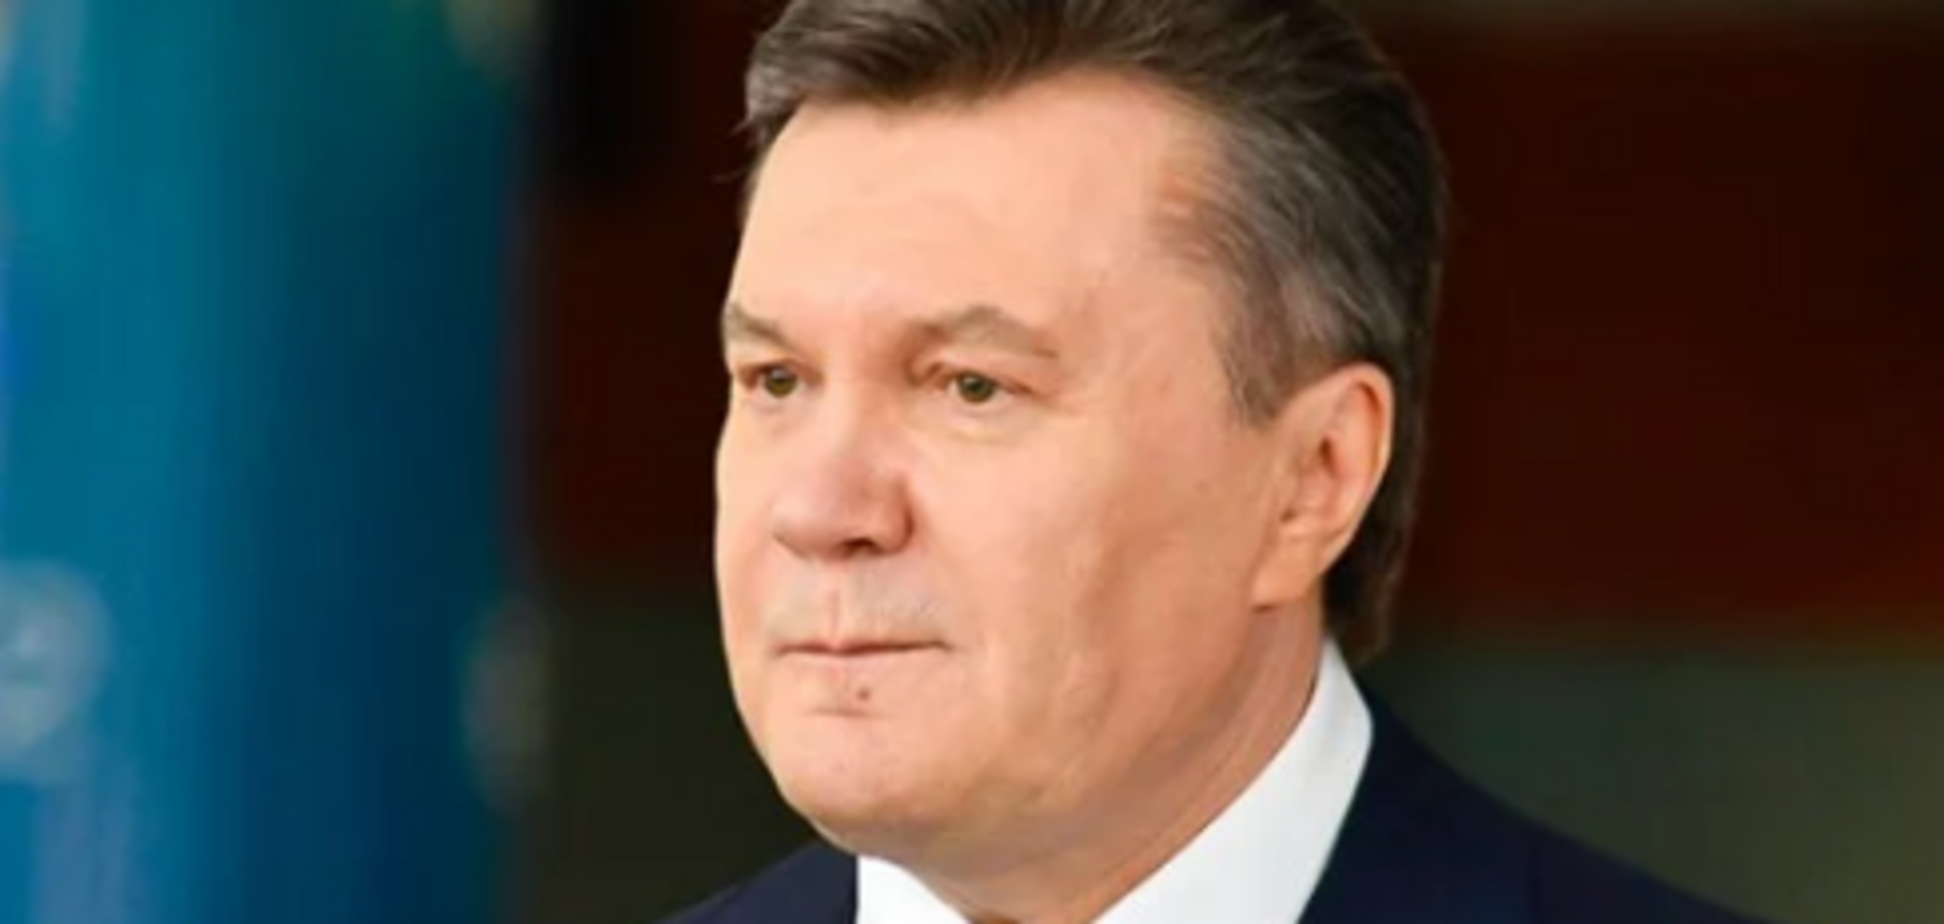 Спортивна травма як діагноз: чому насправді Янукович потрапив до лікарні